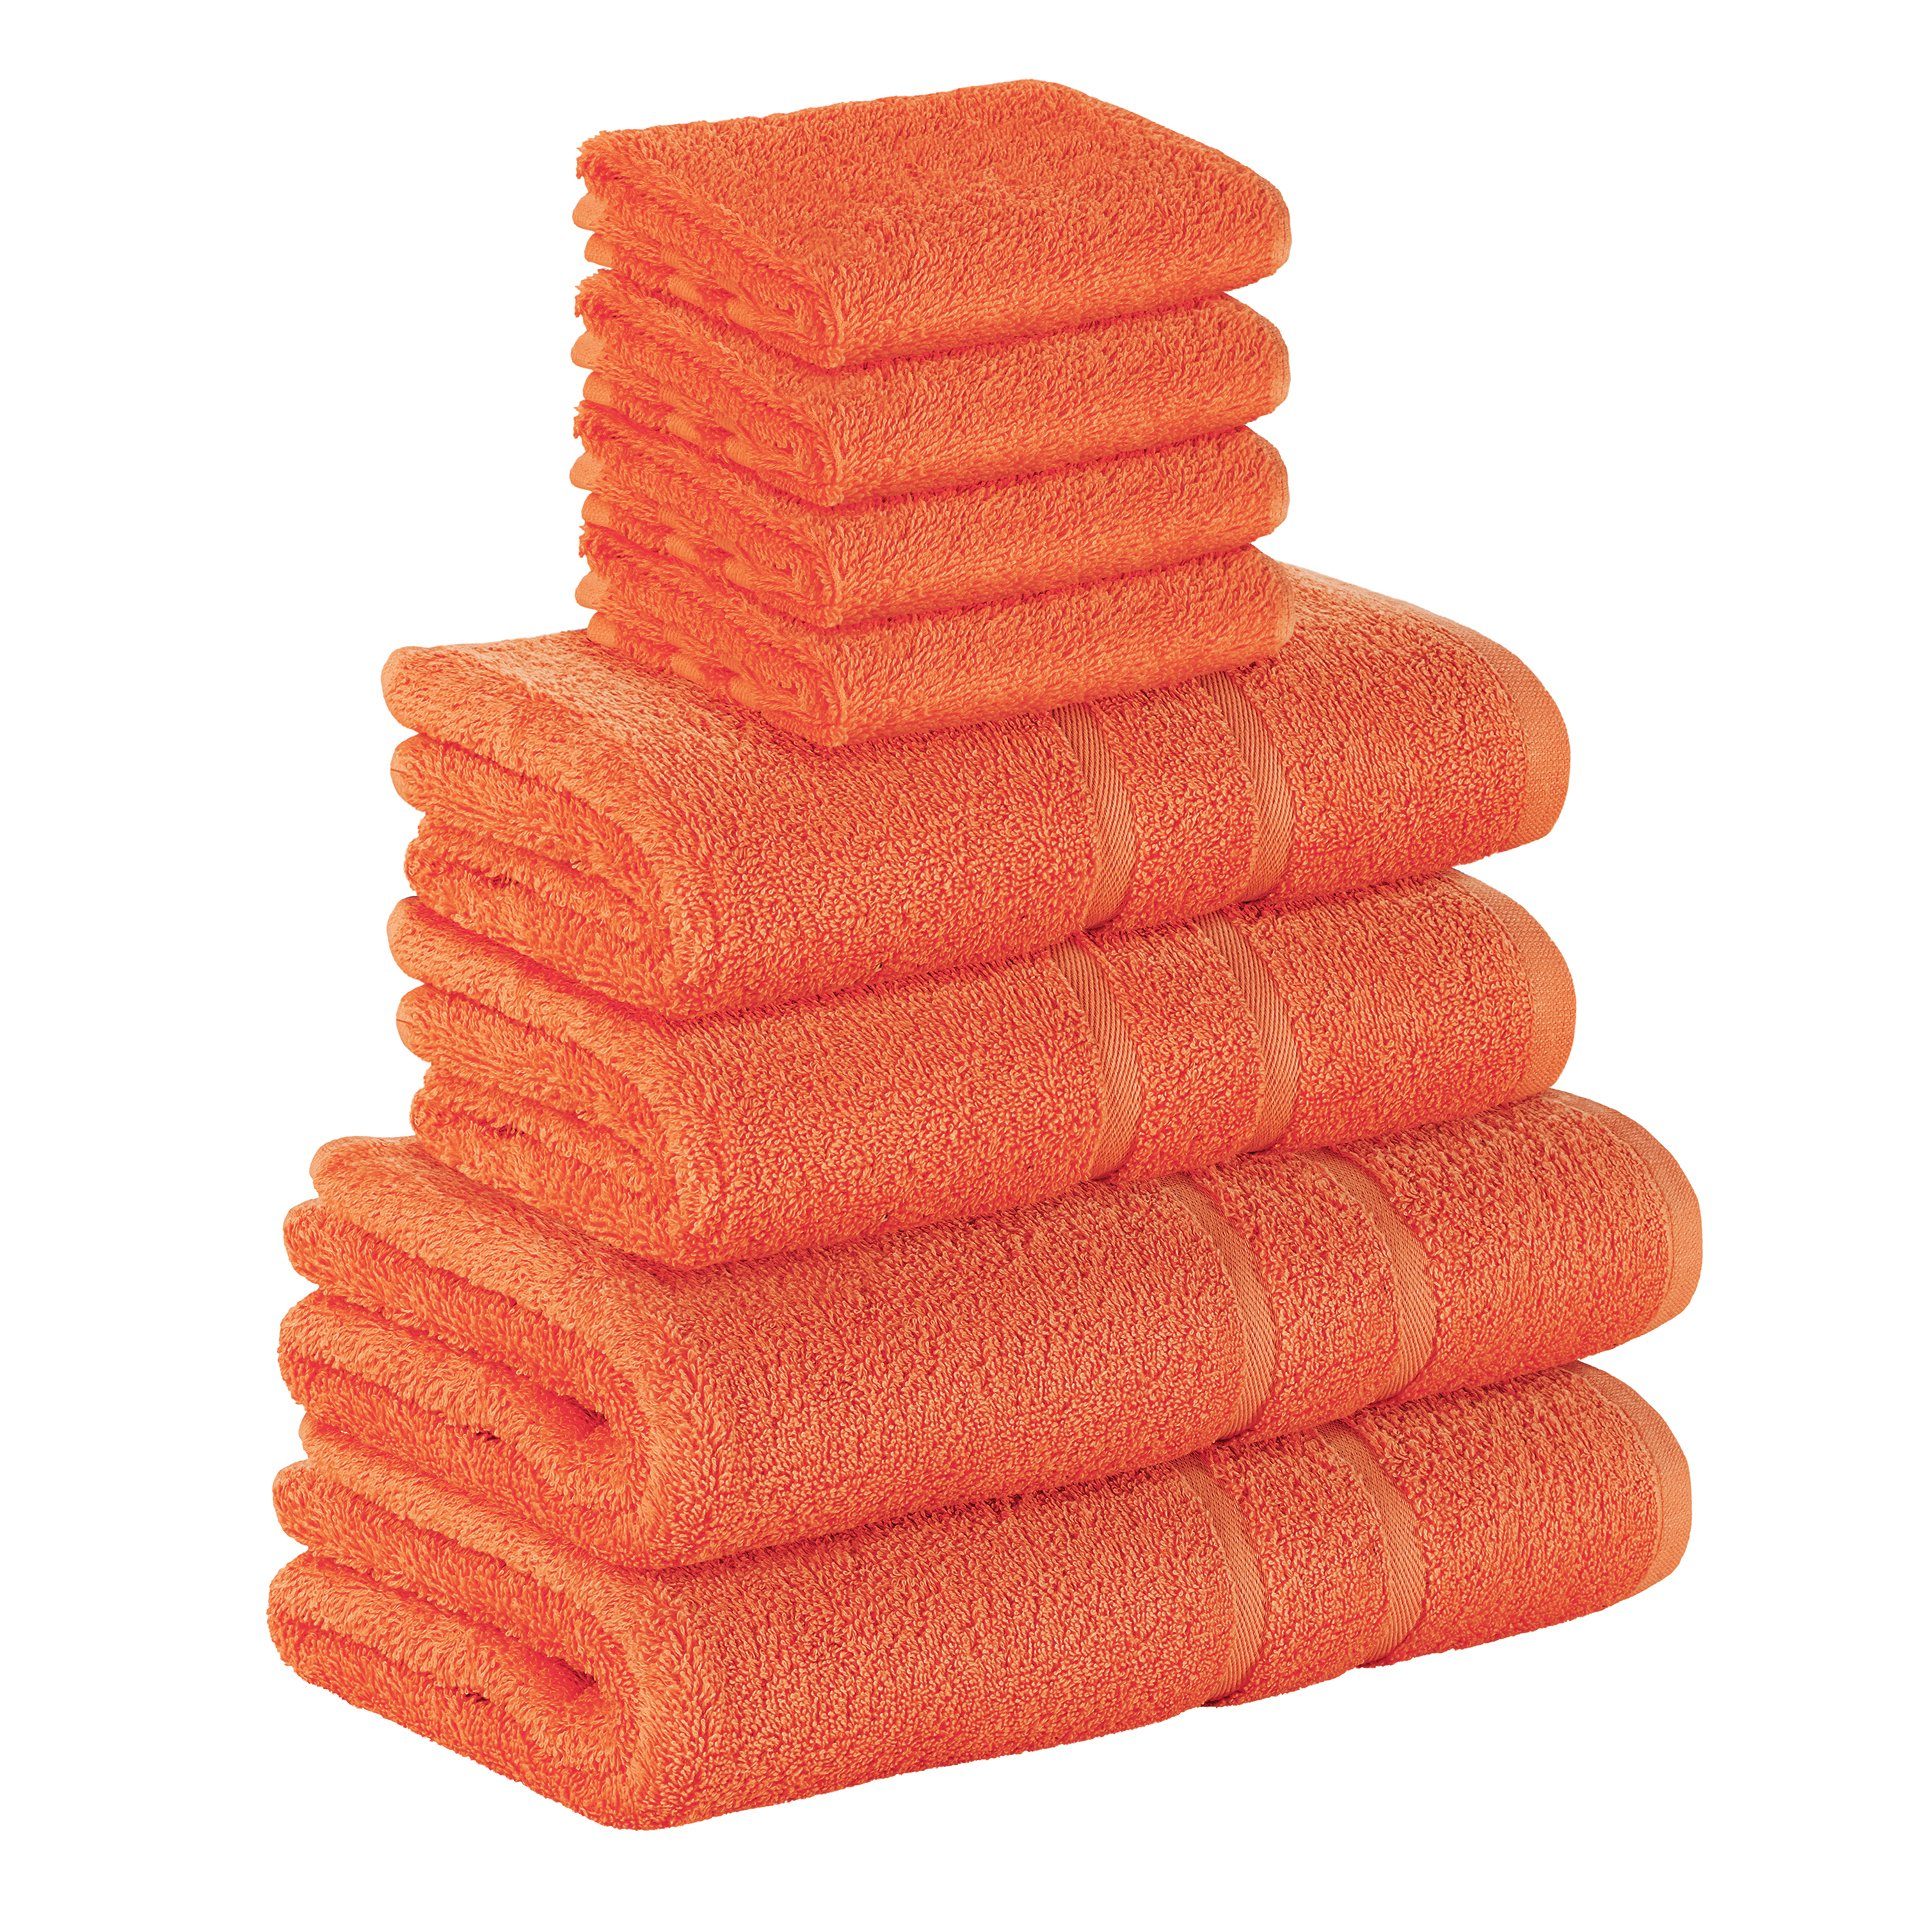 StickandShine Handtuch Set 4x Gästehandtuch 2x Handtücher 2x Duschtücher als SET in verschiedenen Farben (8 Teilig) 100% Baumwolle 500 GSM Frottee 8er Handtuch Pack, (Spar-set), 100% Baumwolle 500 GSM Orange